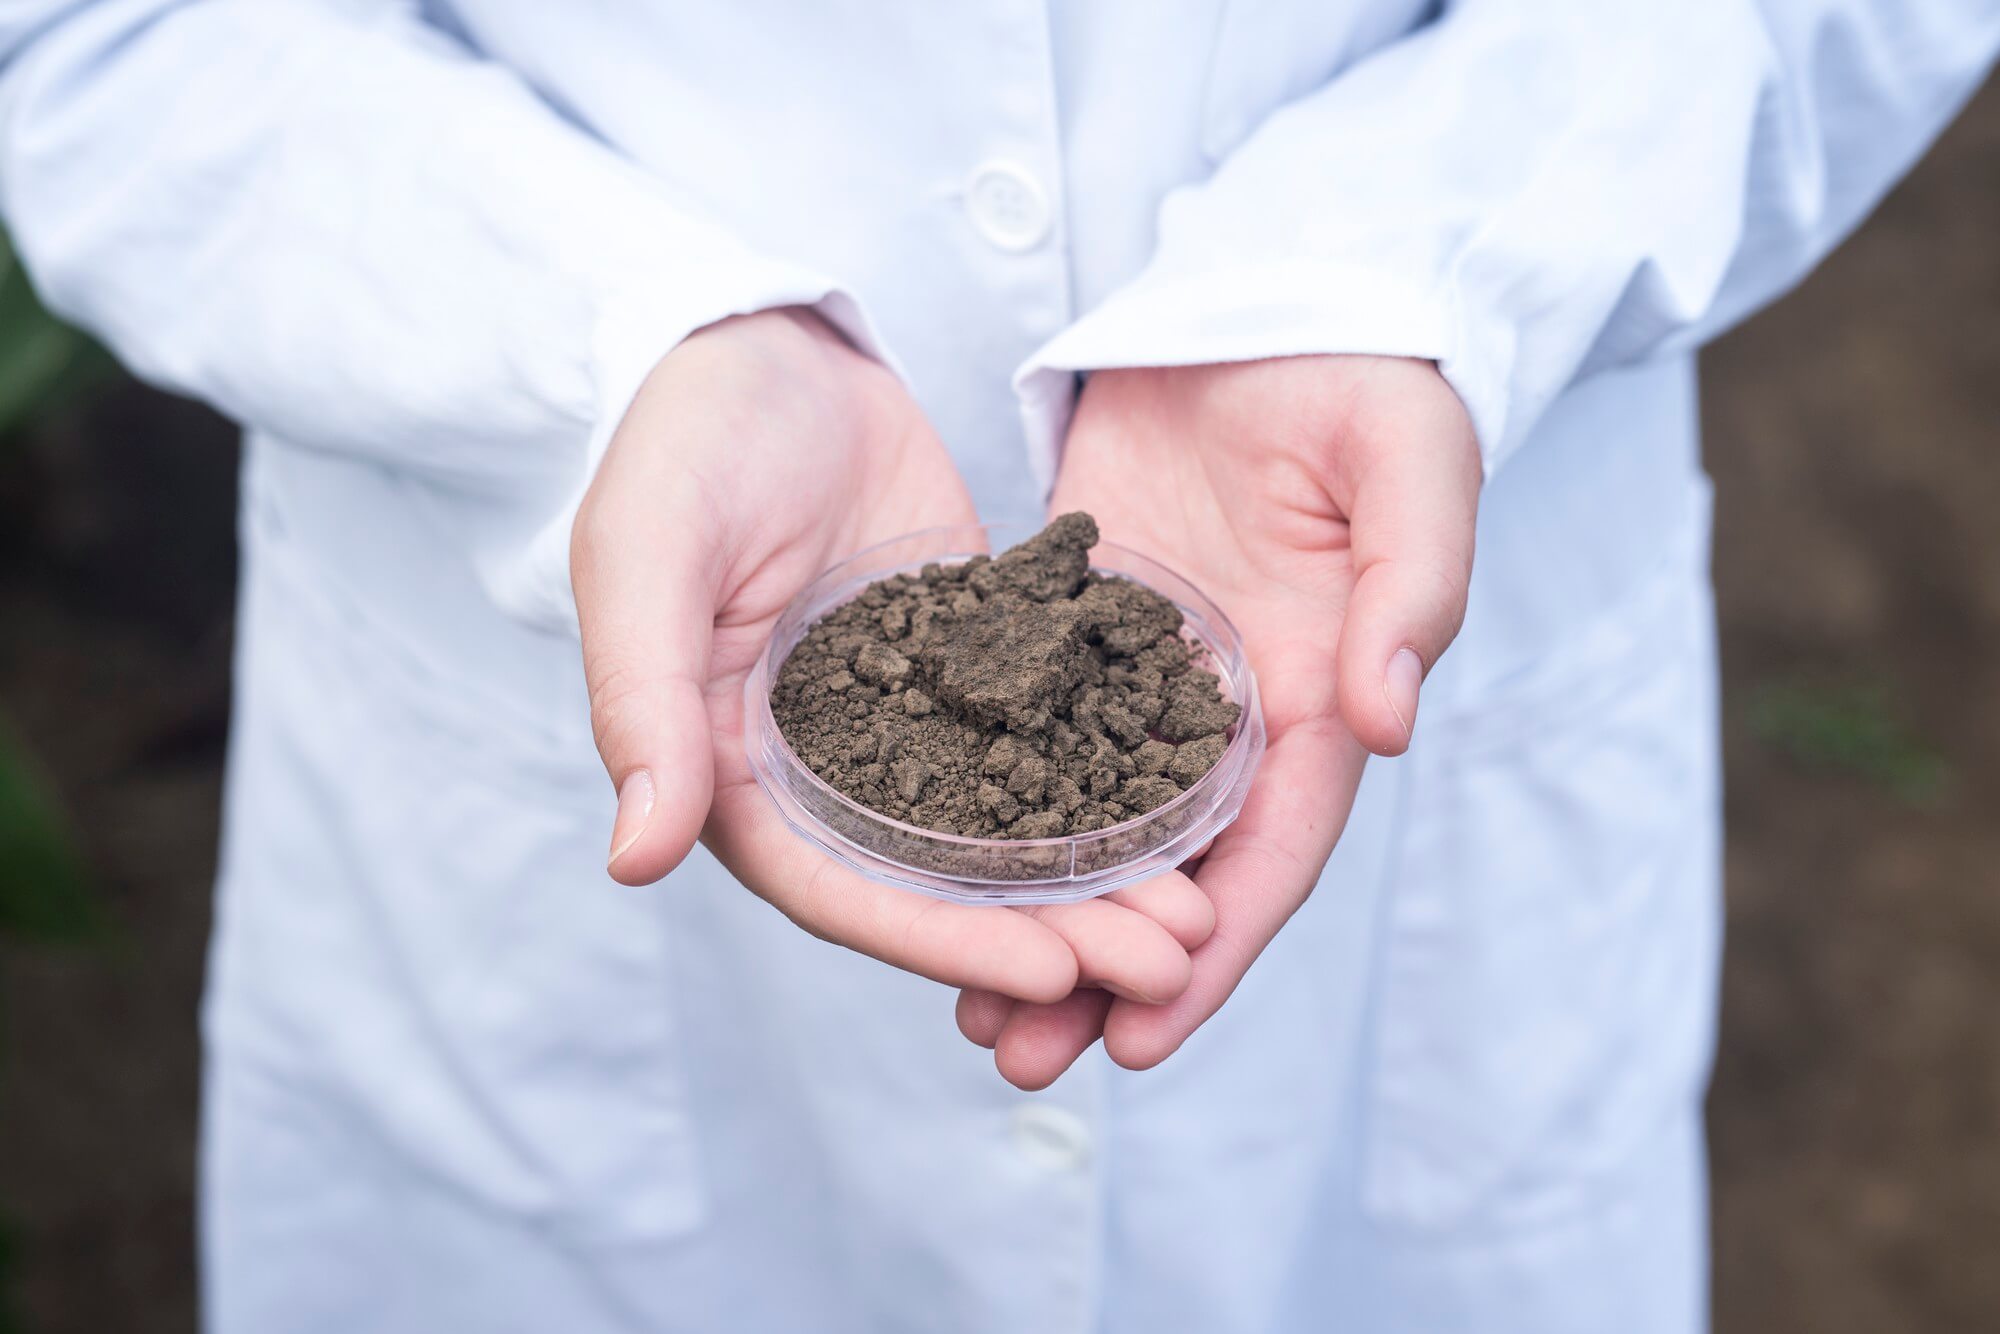 روش های نوین برای افزایش بافت خاک و بهبود تهویه آن